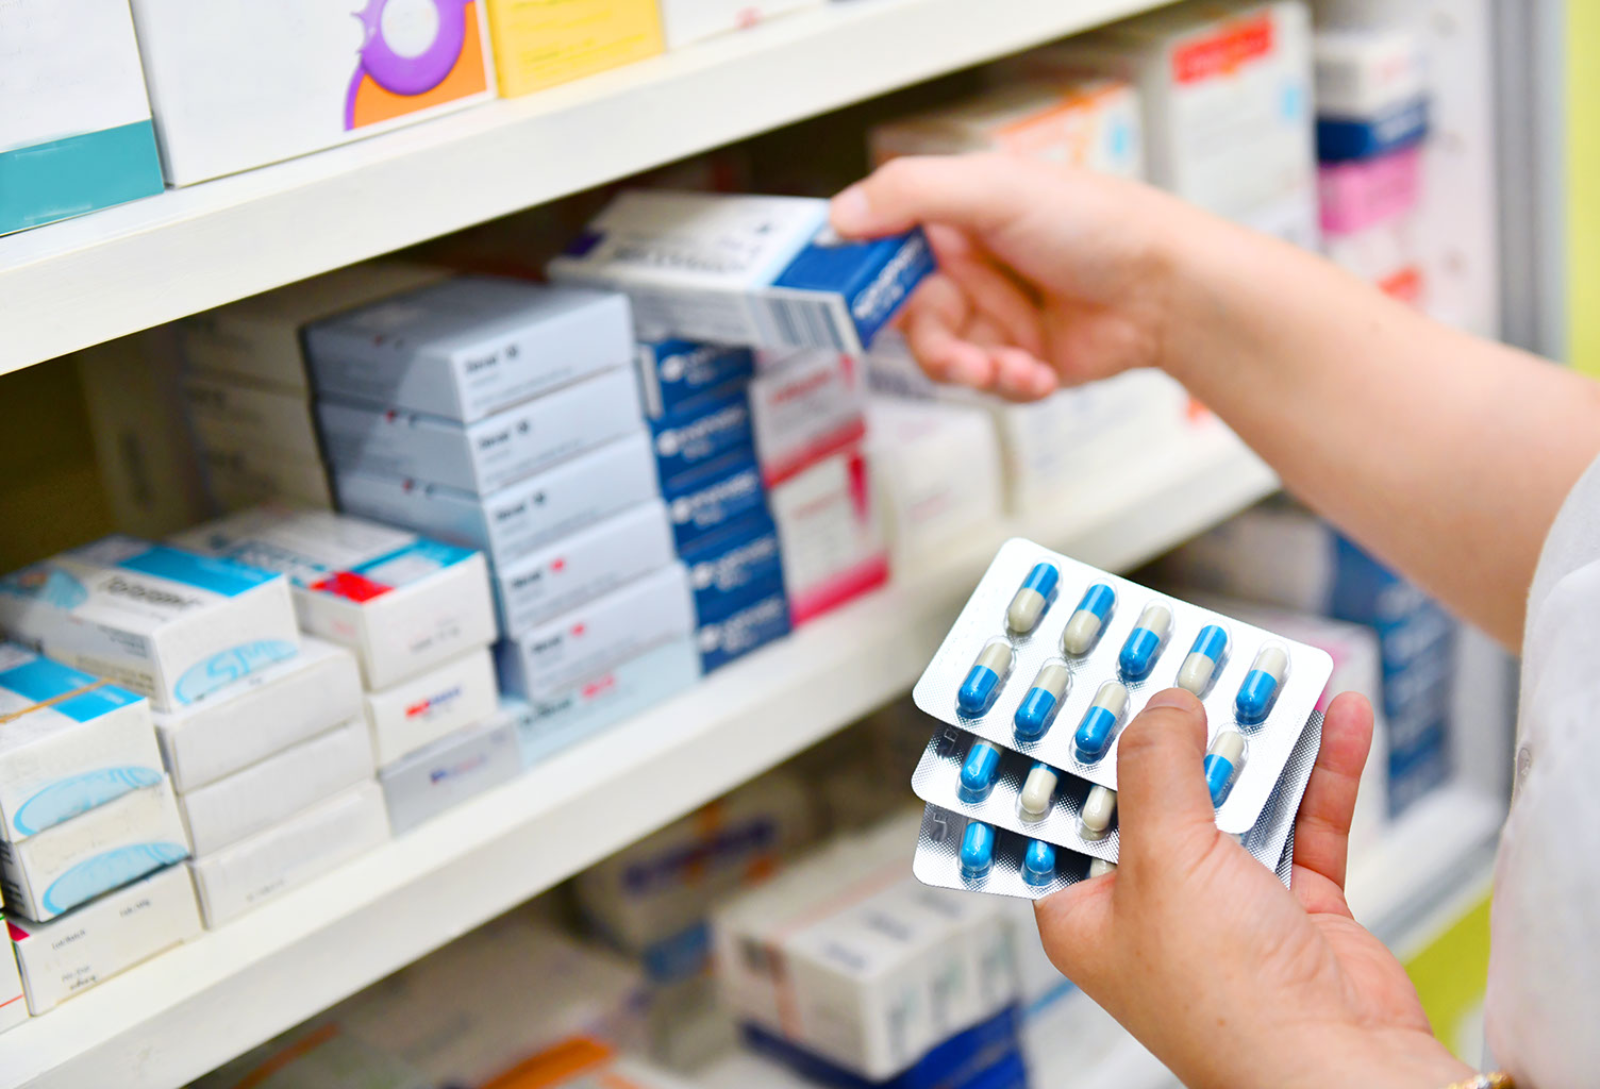 Σύλλογος Φαρμακαποθηκαρίων: Επιστολή στον πρόεδρο του ΕΟΦ για τις ελλείψεις και τις απαγορεύσεις εξαγωγών φαρμάκων